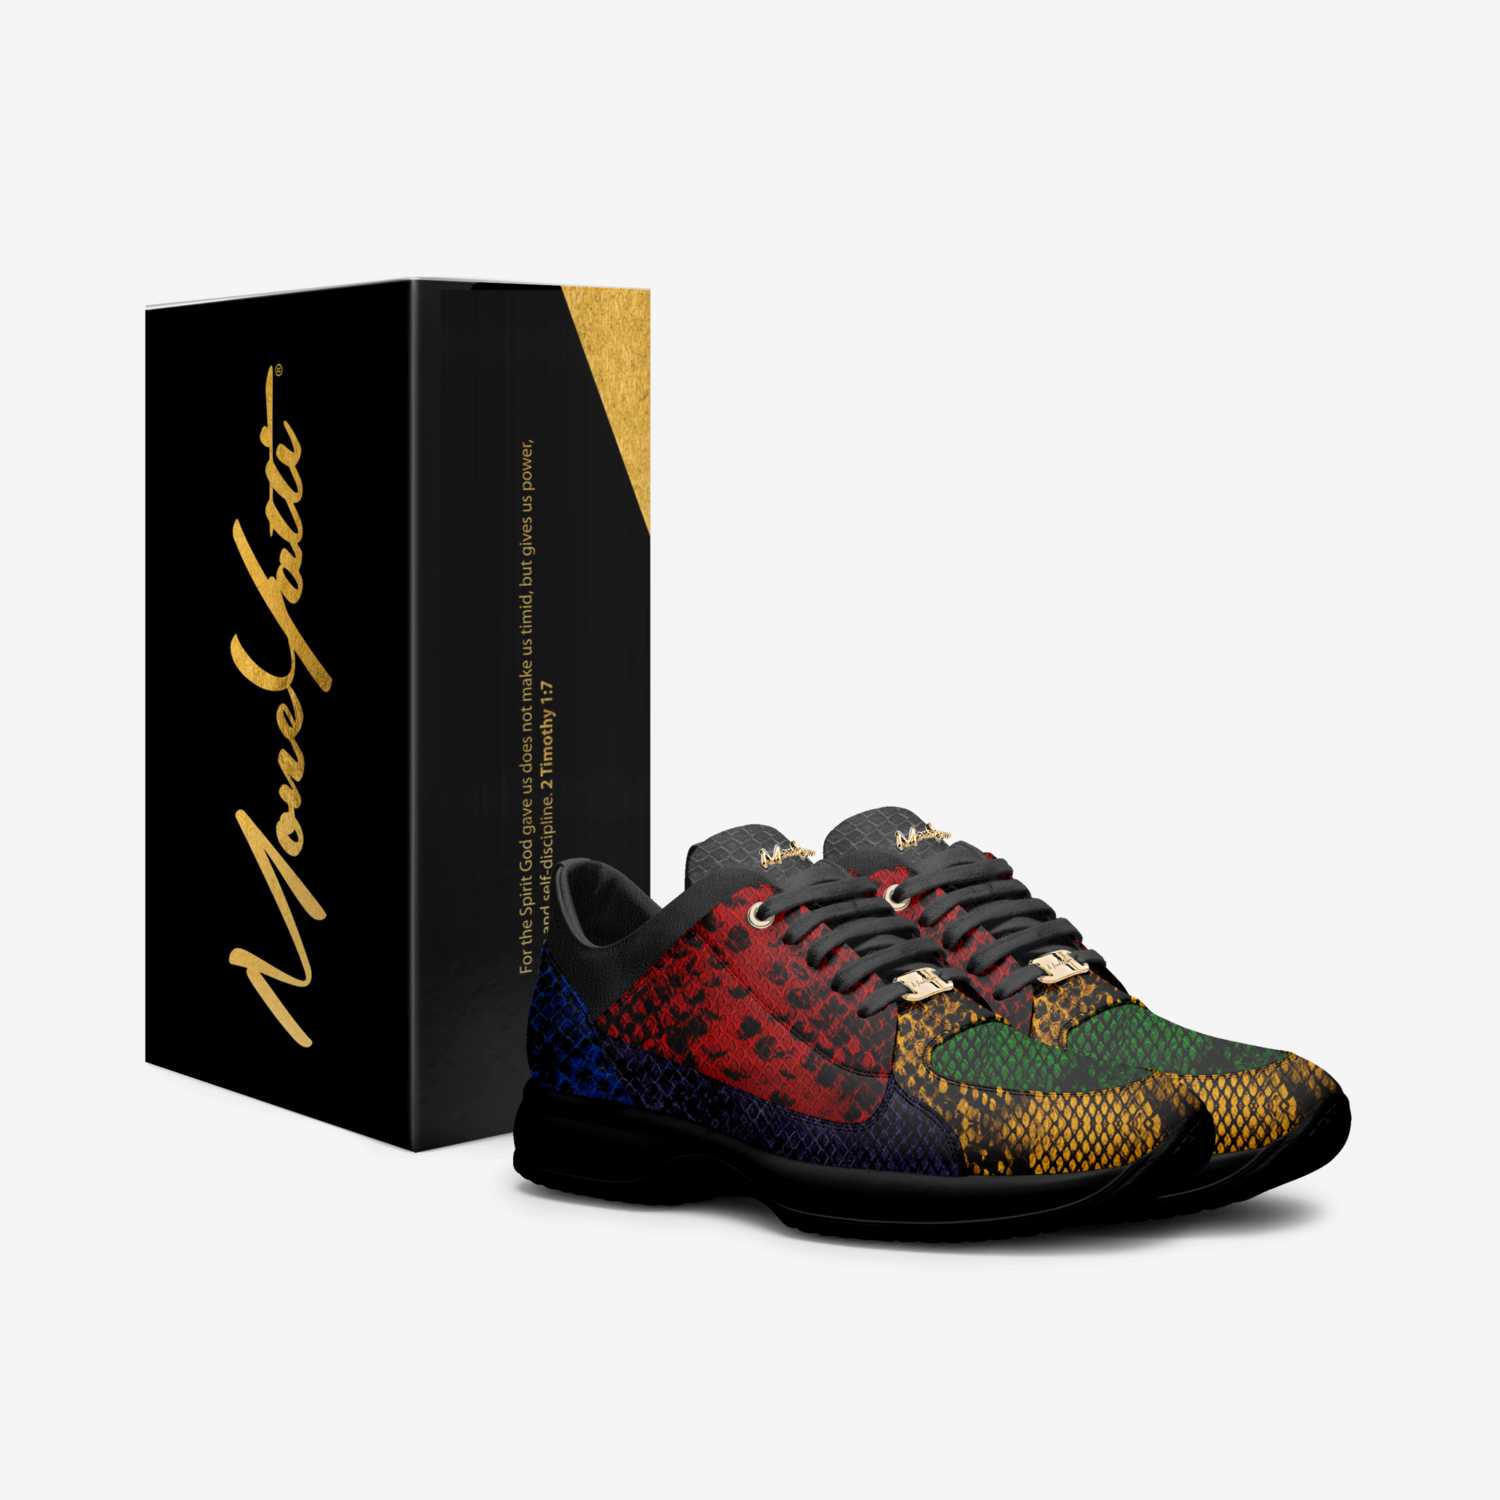 MONEYATTI DRIPLW86 custom made in Italy shoes by Moneyatti Brand | Box view